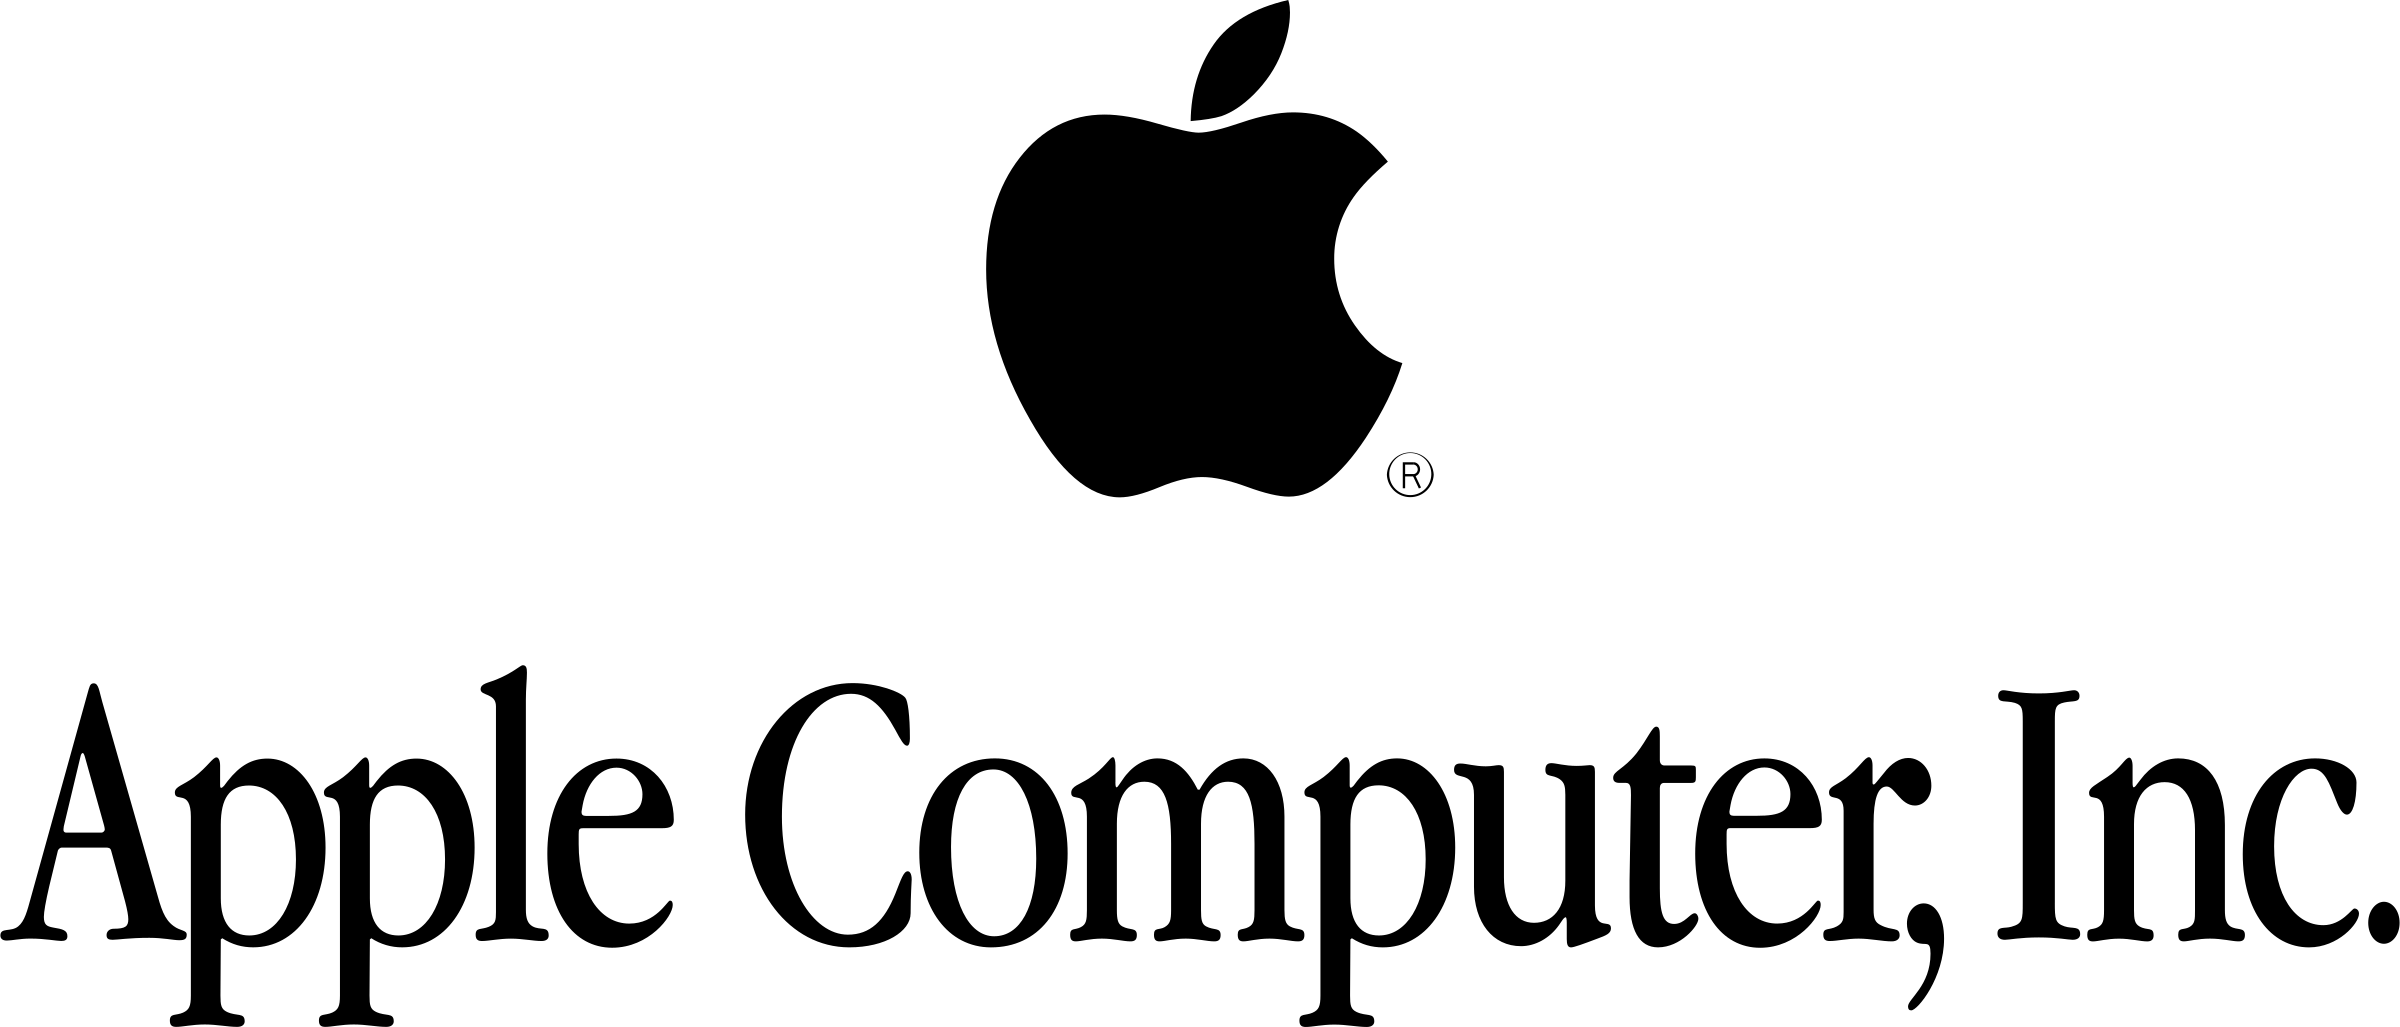 Логотип Apple. Apple надпись. Apple Computer логотип. Apple название.